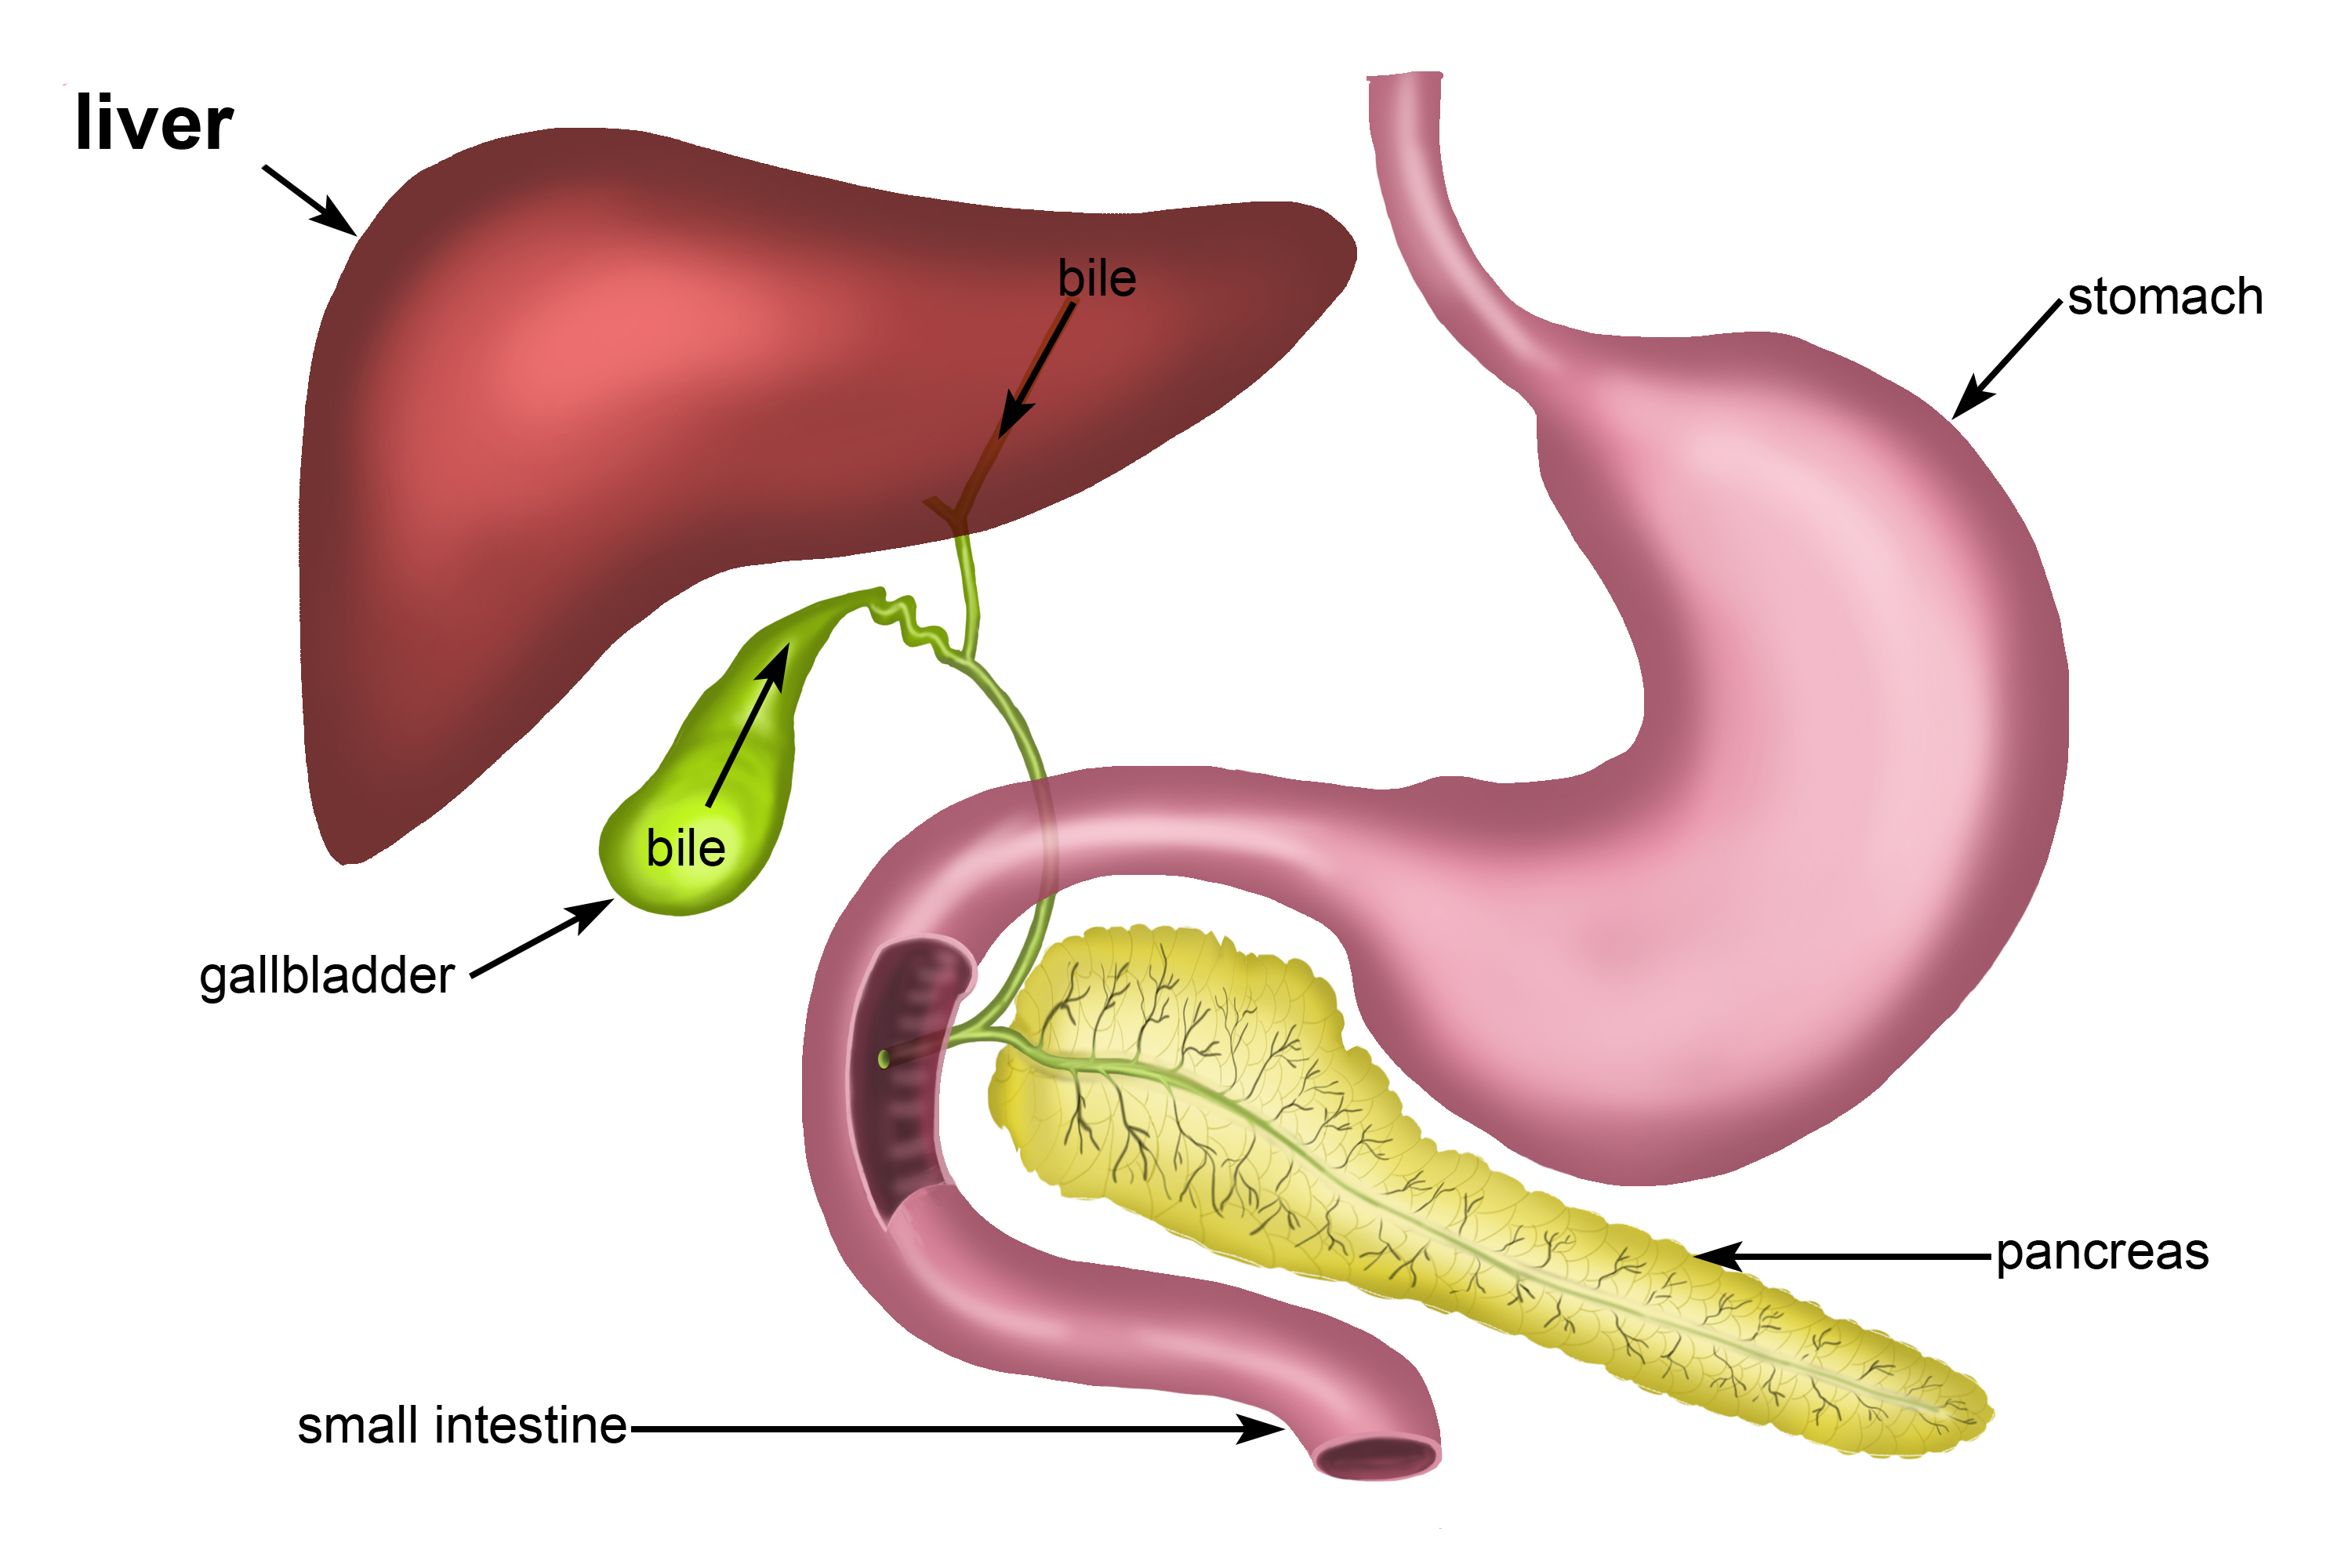 Gallbladder structure